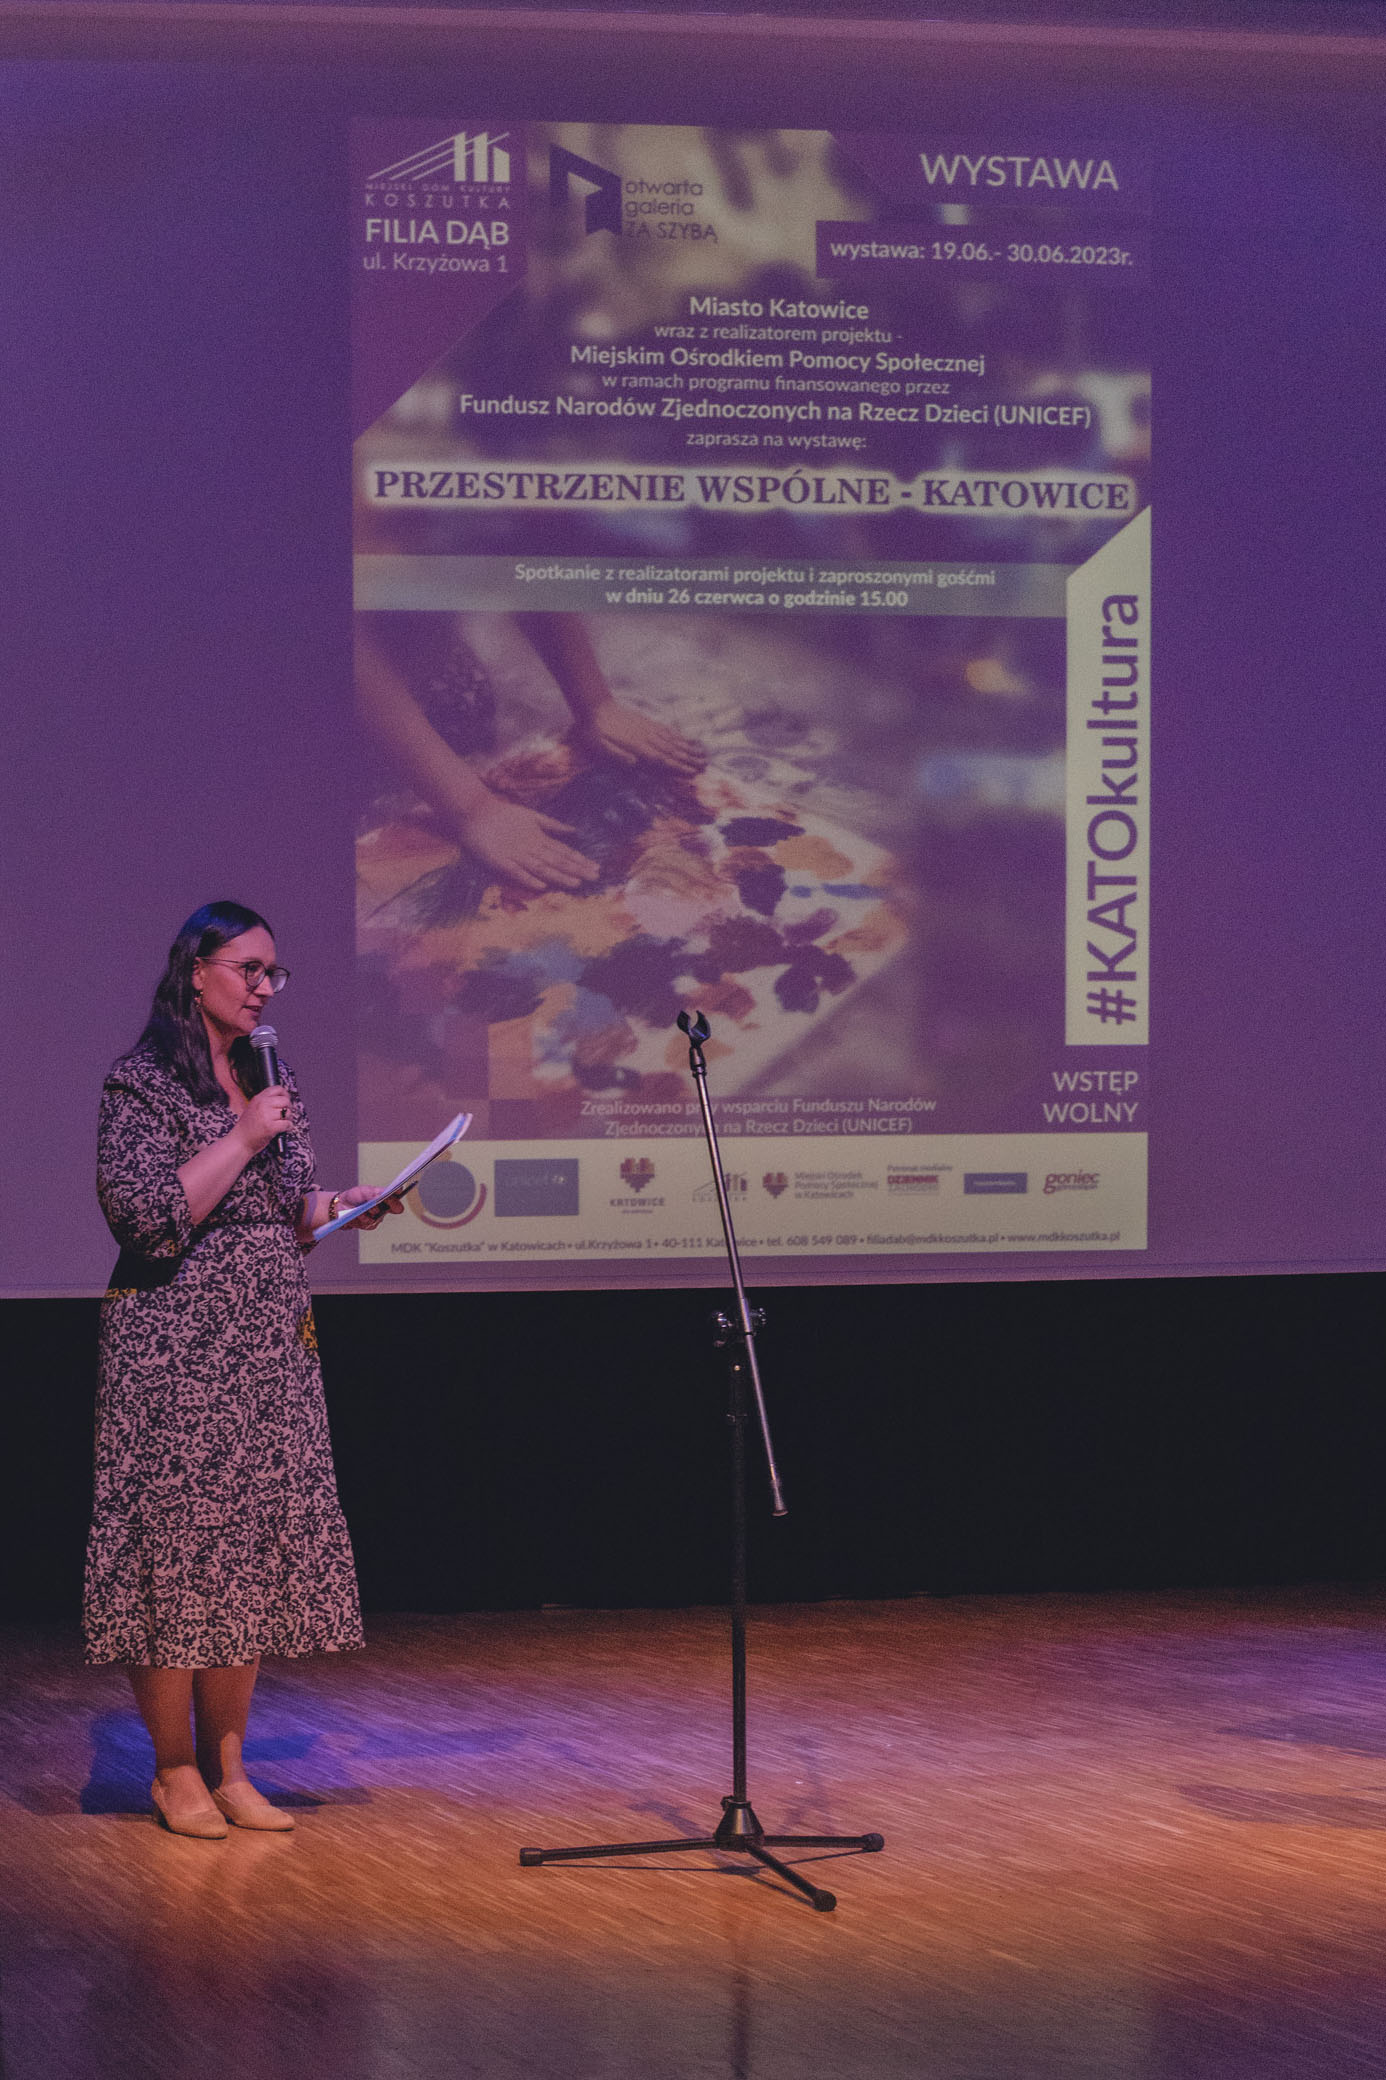 Zdjęcie przedstawia kobietę prowadzącą spotkanie. Kobieta stoi na scenie i mówi do mikrofonu. W tle znajduje się plakat informujące o wystwie "Przestrzenie wspólne - Katowice".